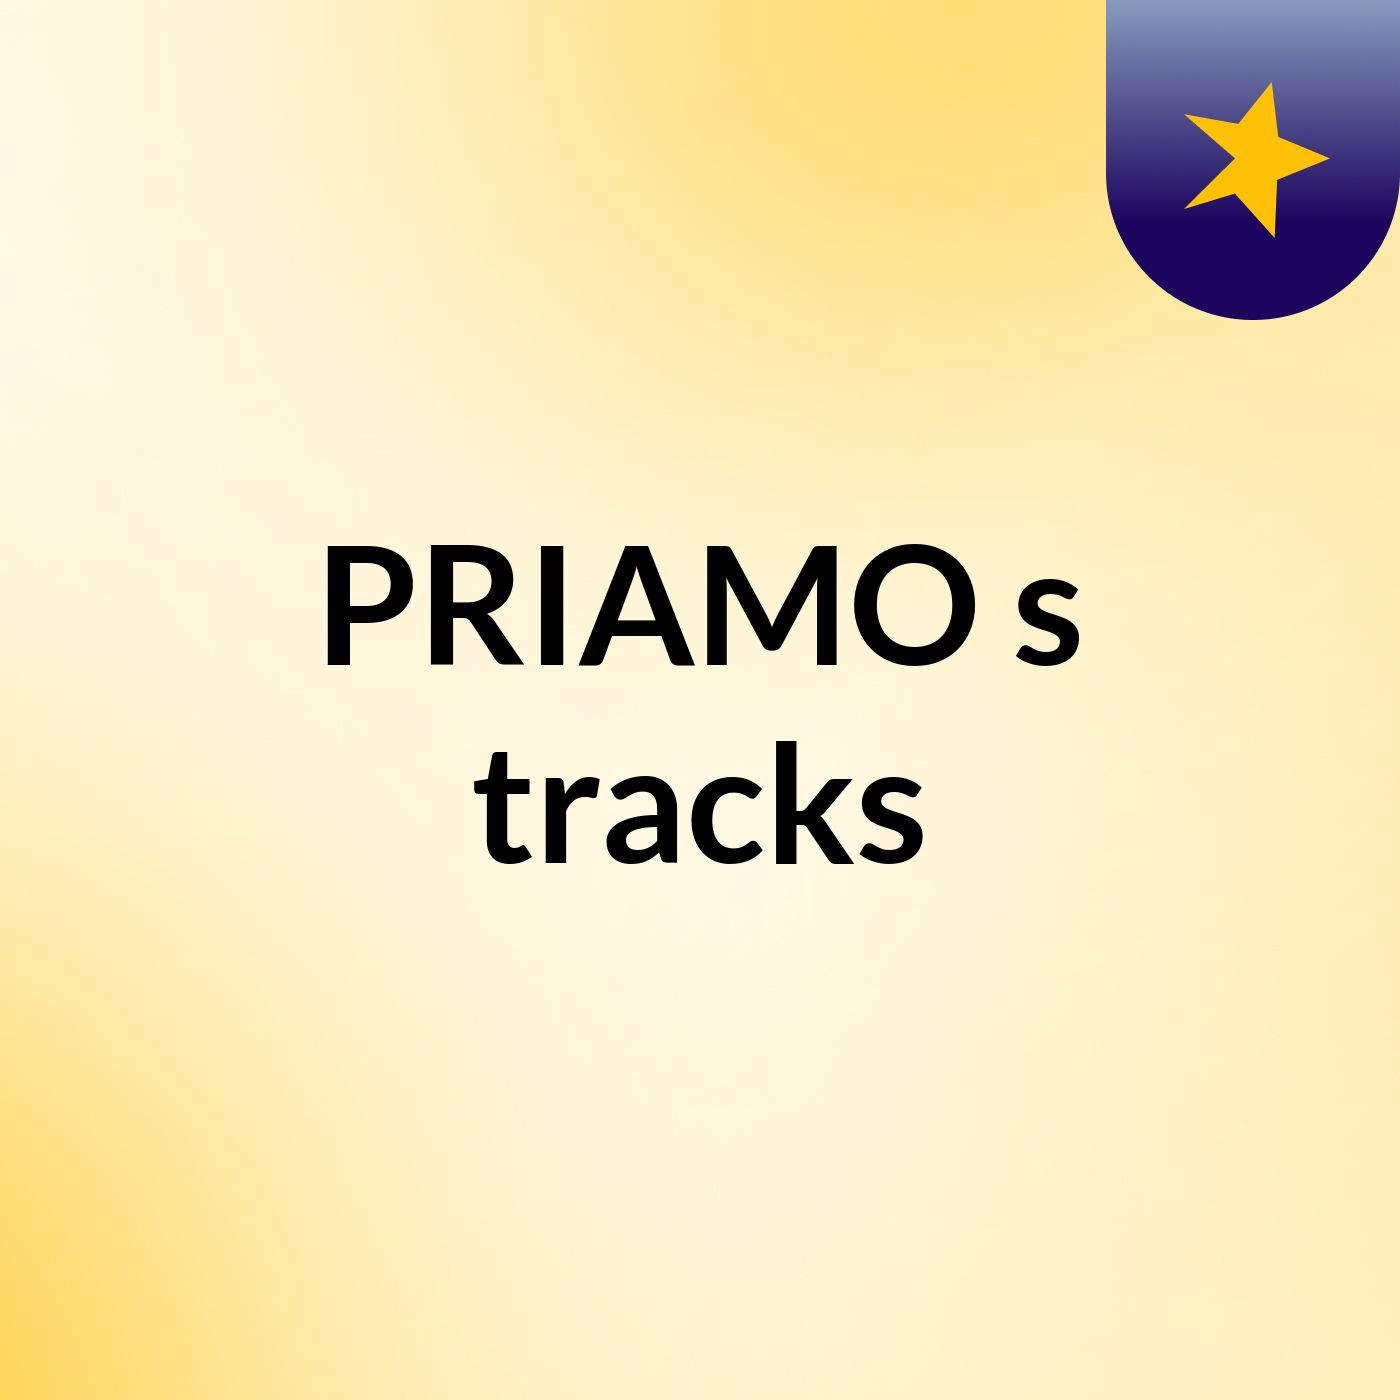 PRIAMO's tracks